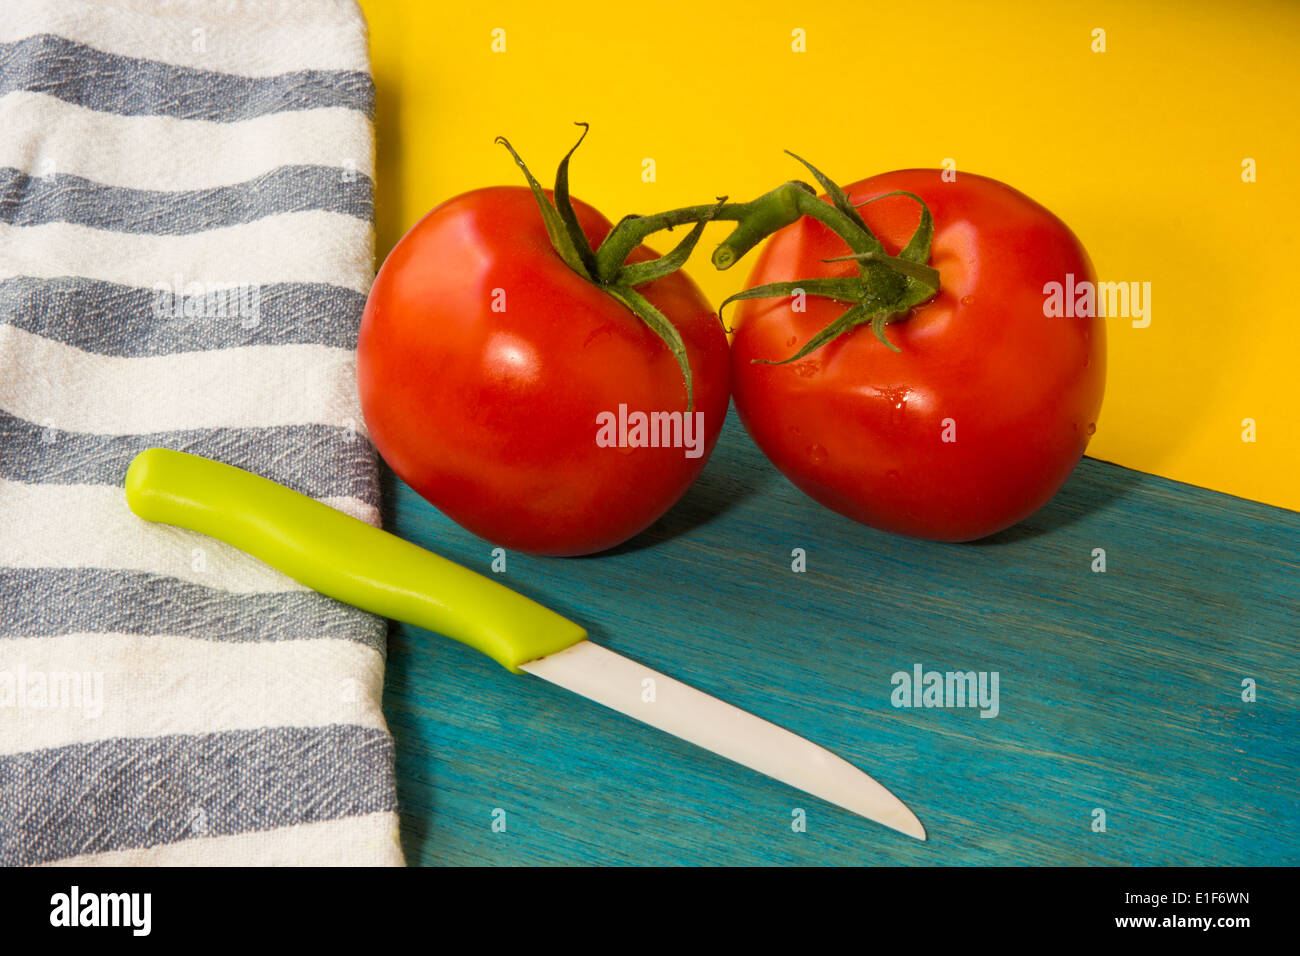 Image colorée montrant deux tomates rouges, un couteau et un fond bleu et jaune. Banque D'Images